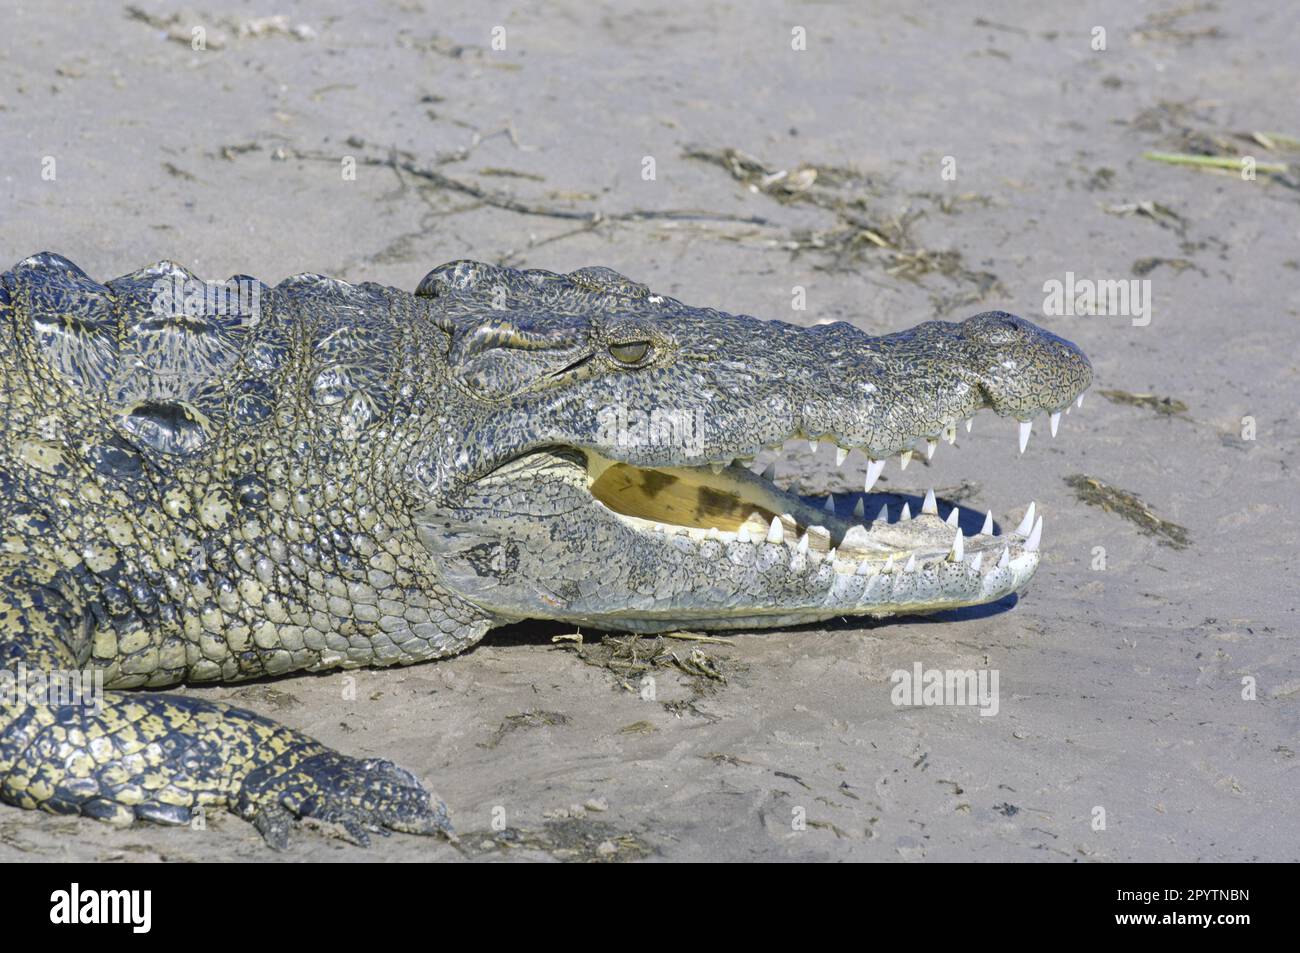 Grand crocodile du Nil (Crocodylus niloticus) photo de la tête montrant les dents. Chobe, Botswana. Banque D'Images